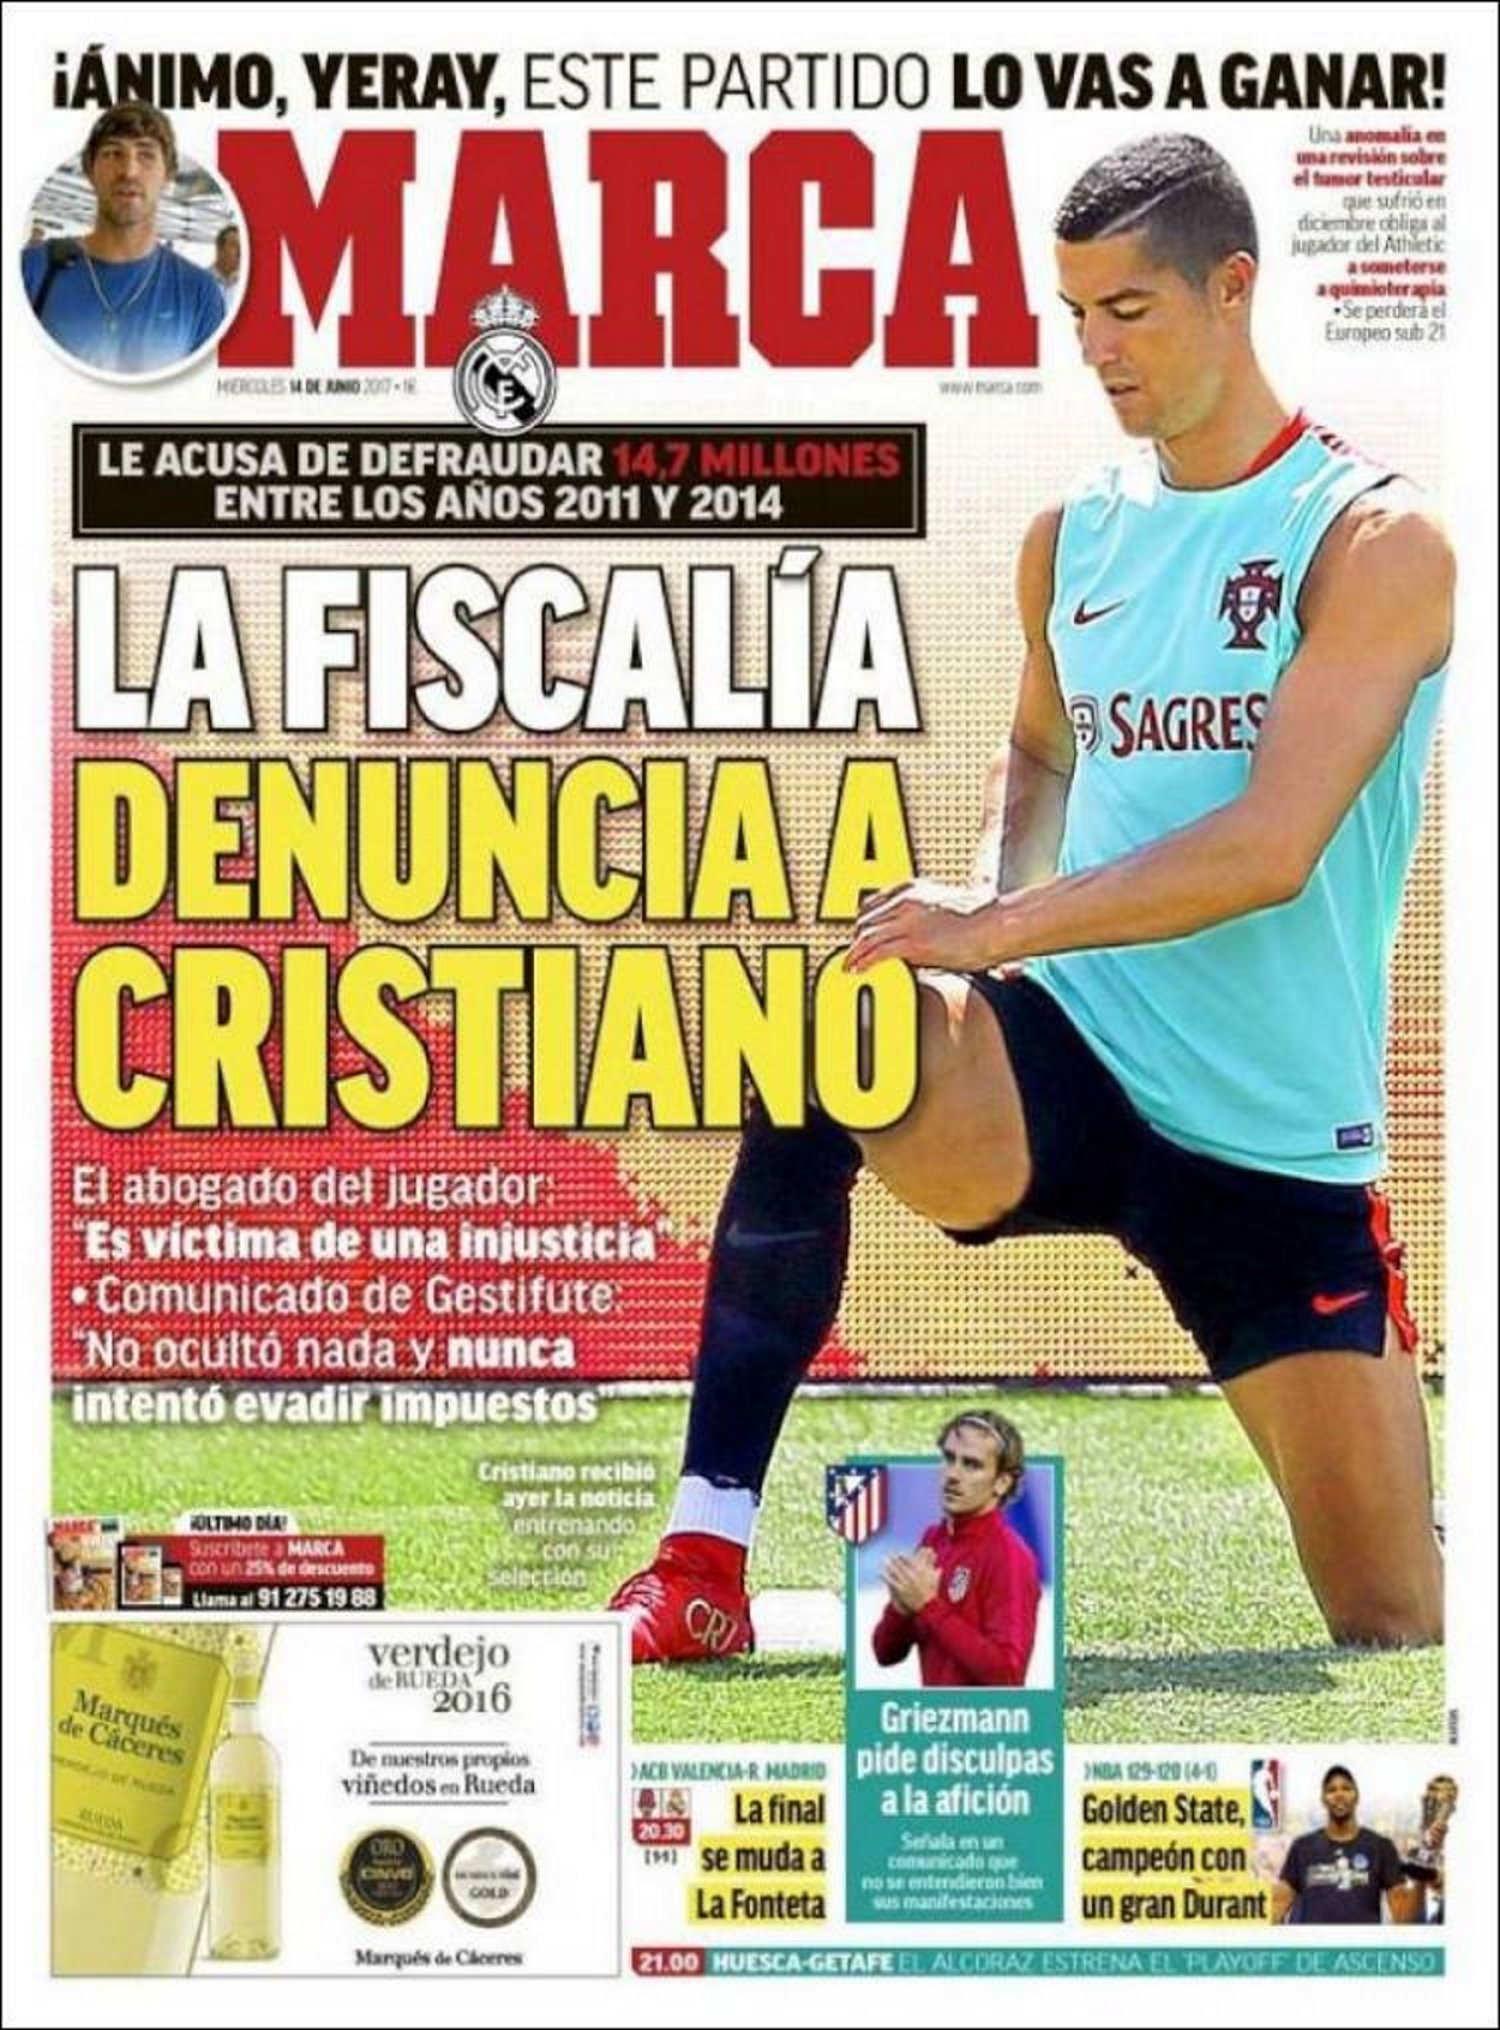 Cristiano juga amb Portugal per la premsa de Madrid